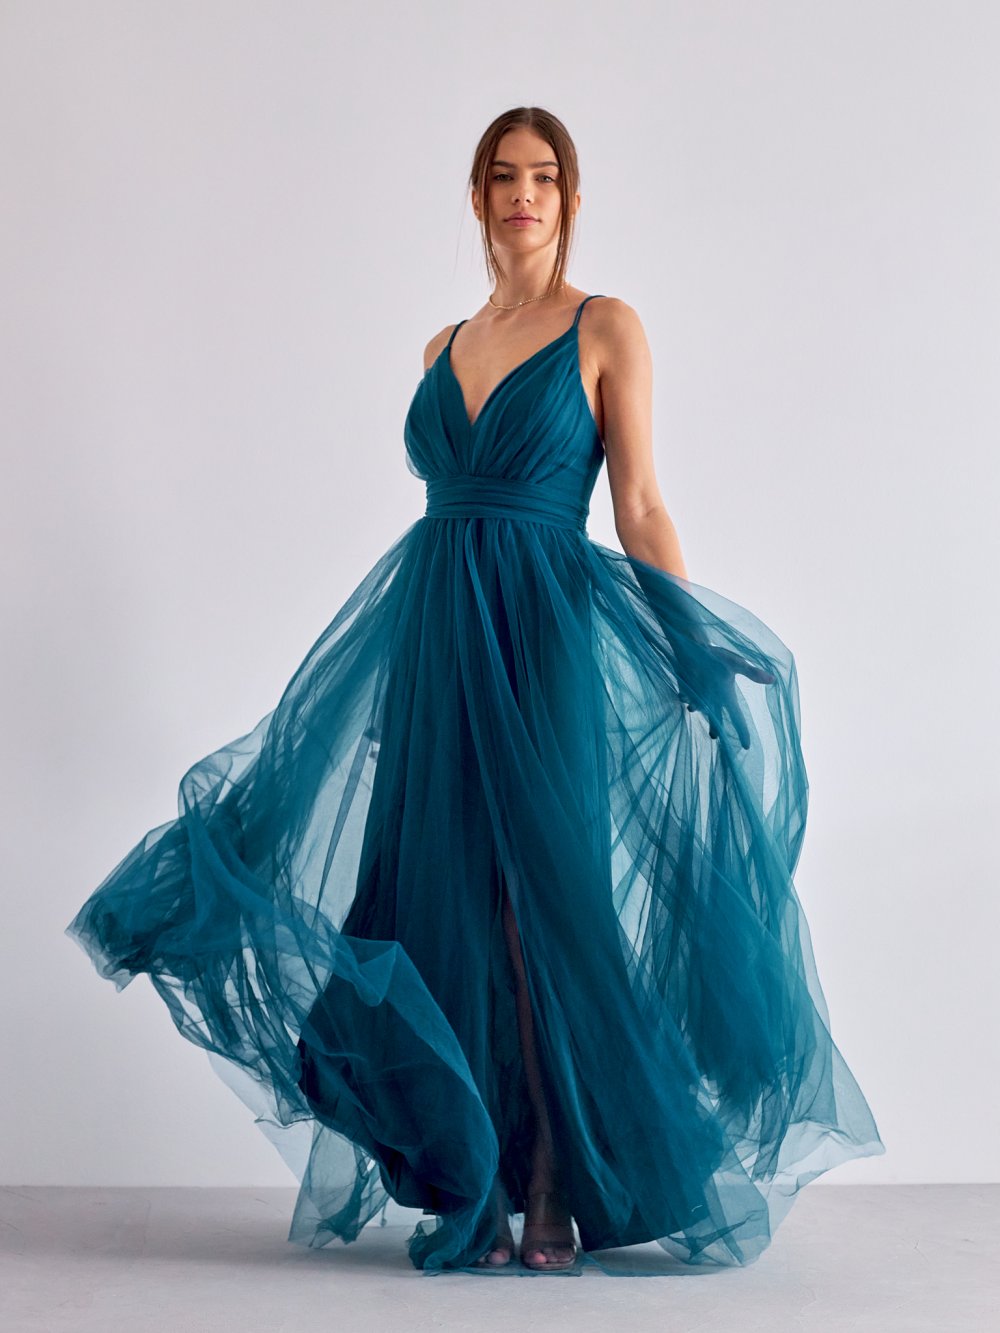 Modré tylové společenské šaty Polina